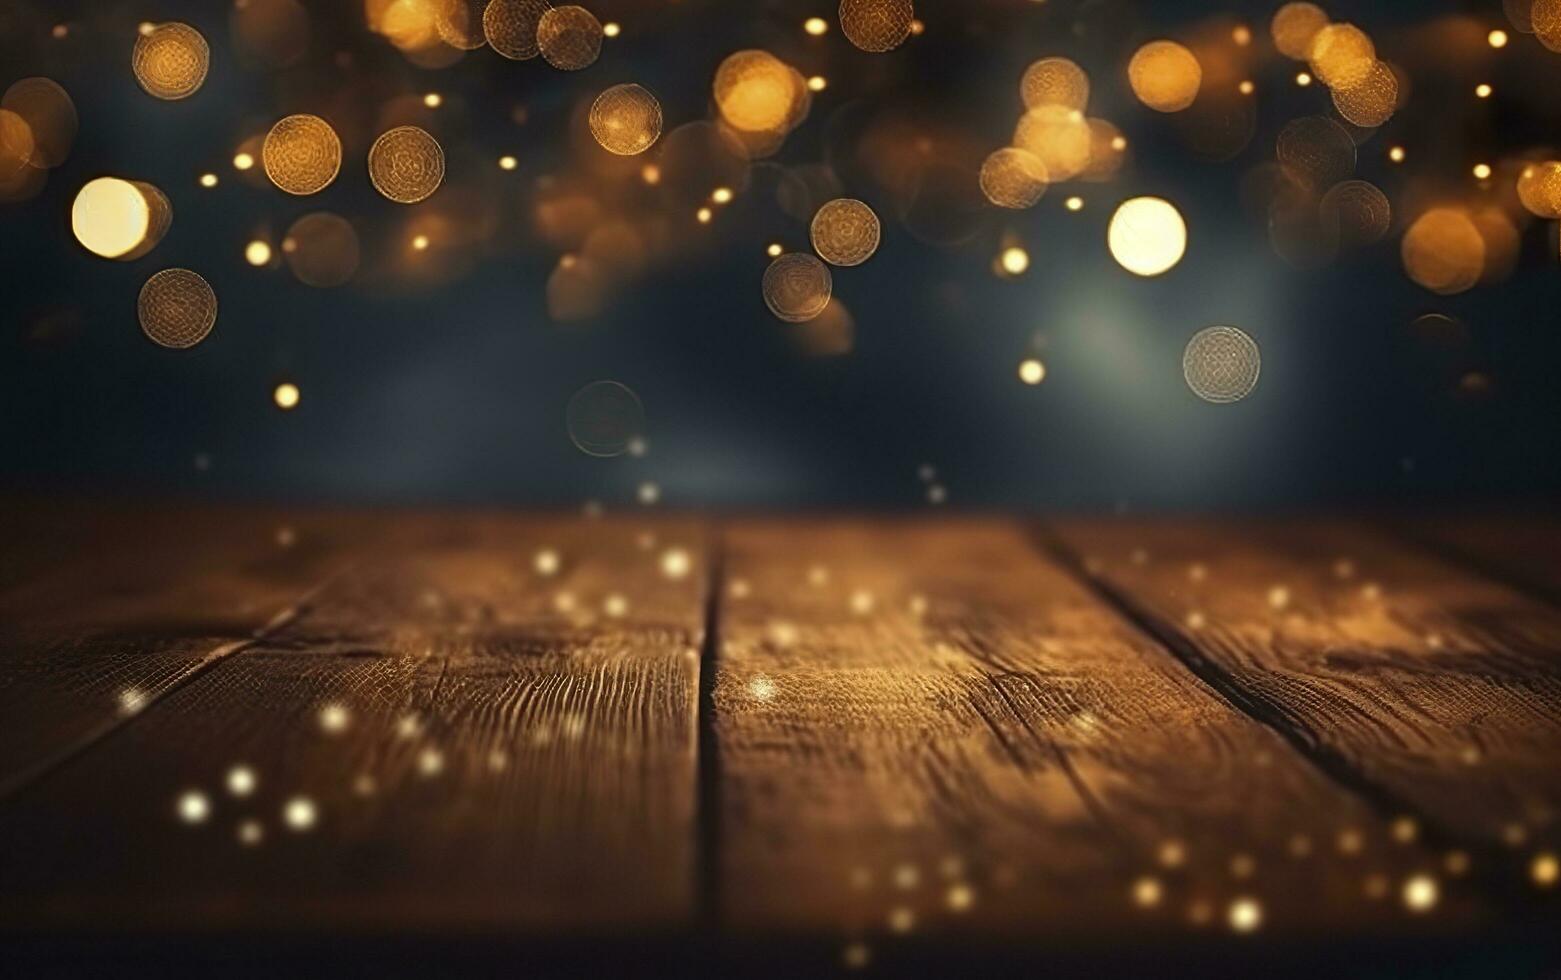 Natal bokeh fundo, de madeira fundo com bokeh, brilhar estrelas, rústico madeira, e pano de fundo para produtos apresentação. ai generativo foto